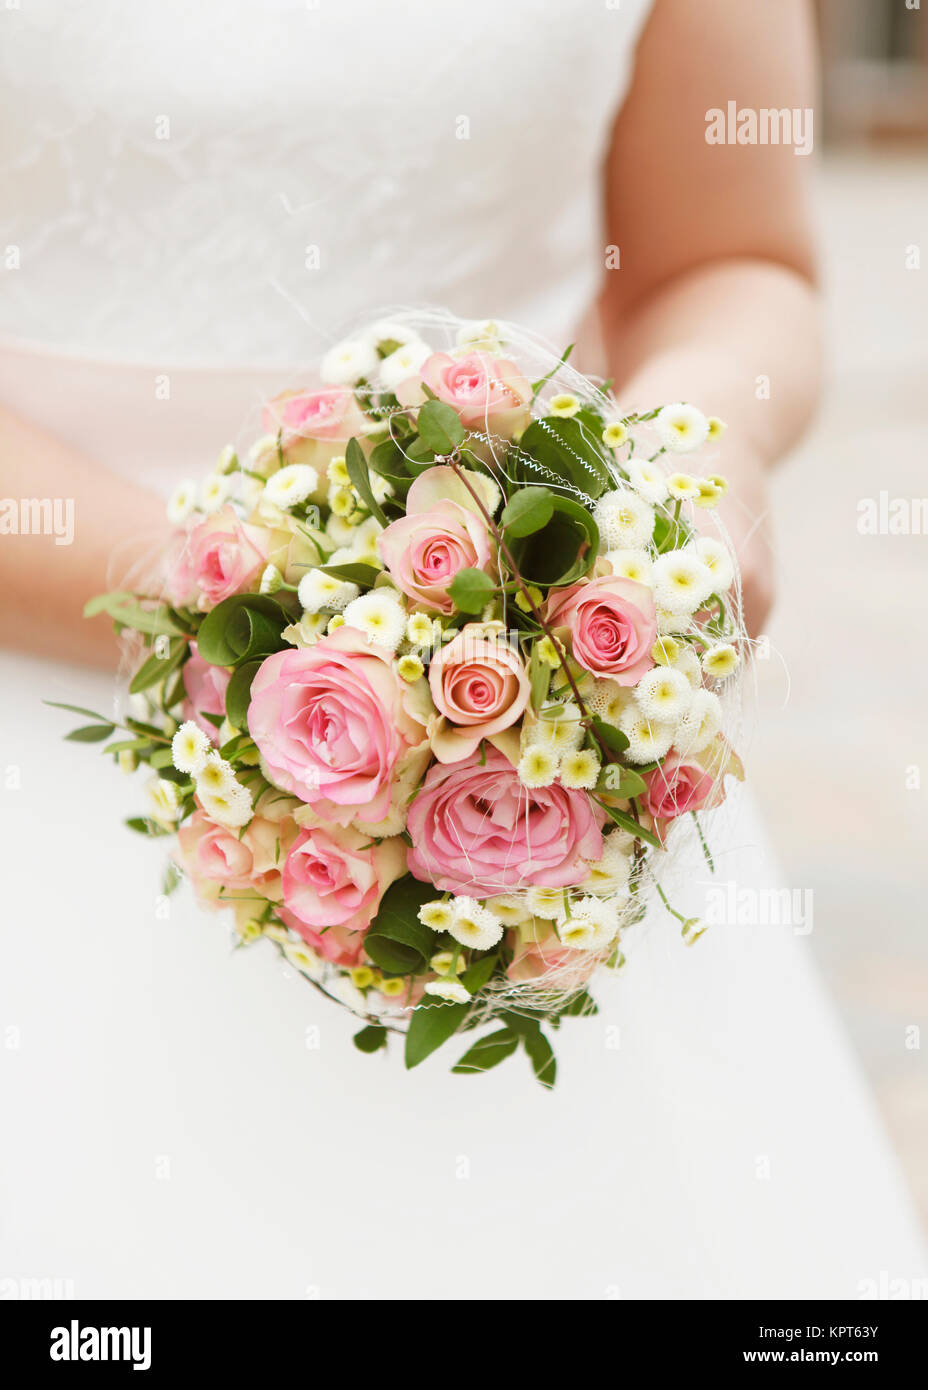 eine Braut mit Brautstrauß rosa Rosen, kein Gesicht Stock Photo - Alamy